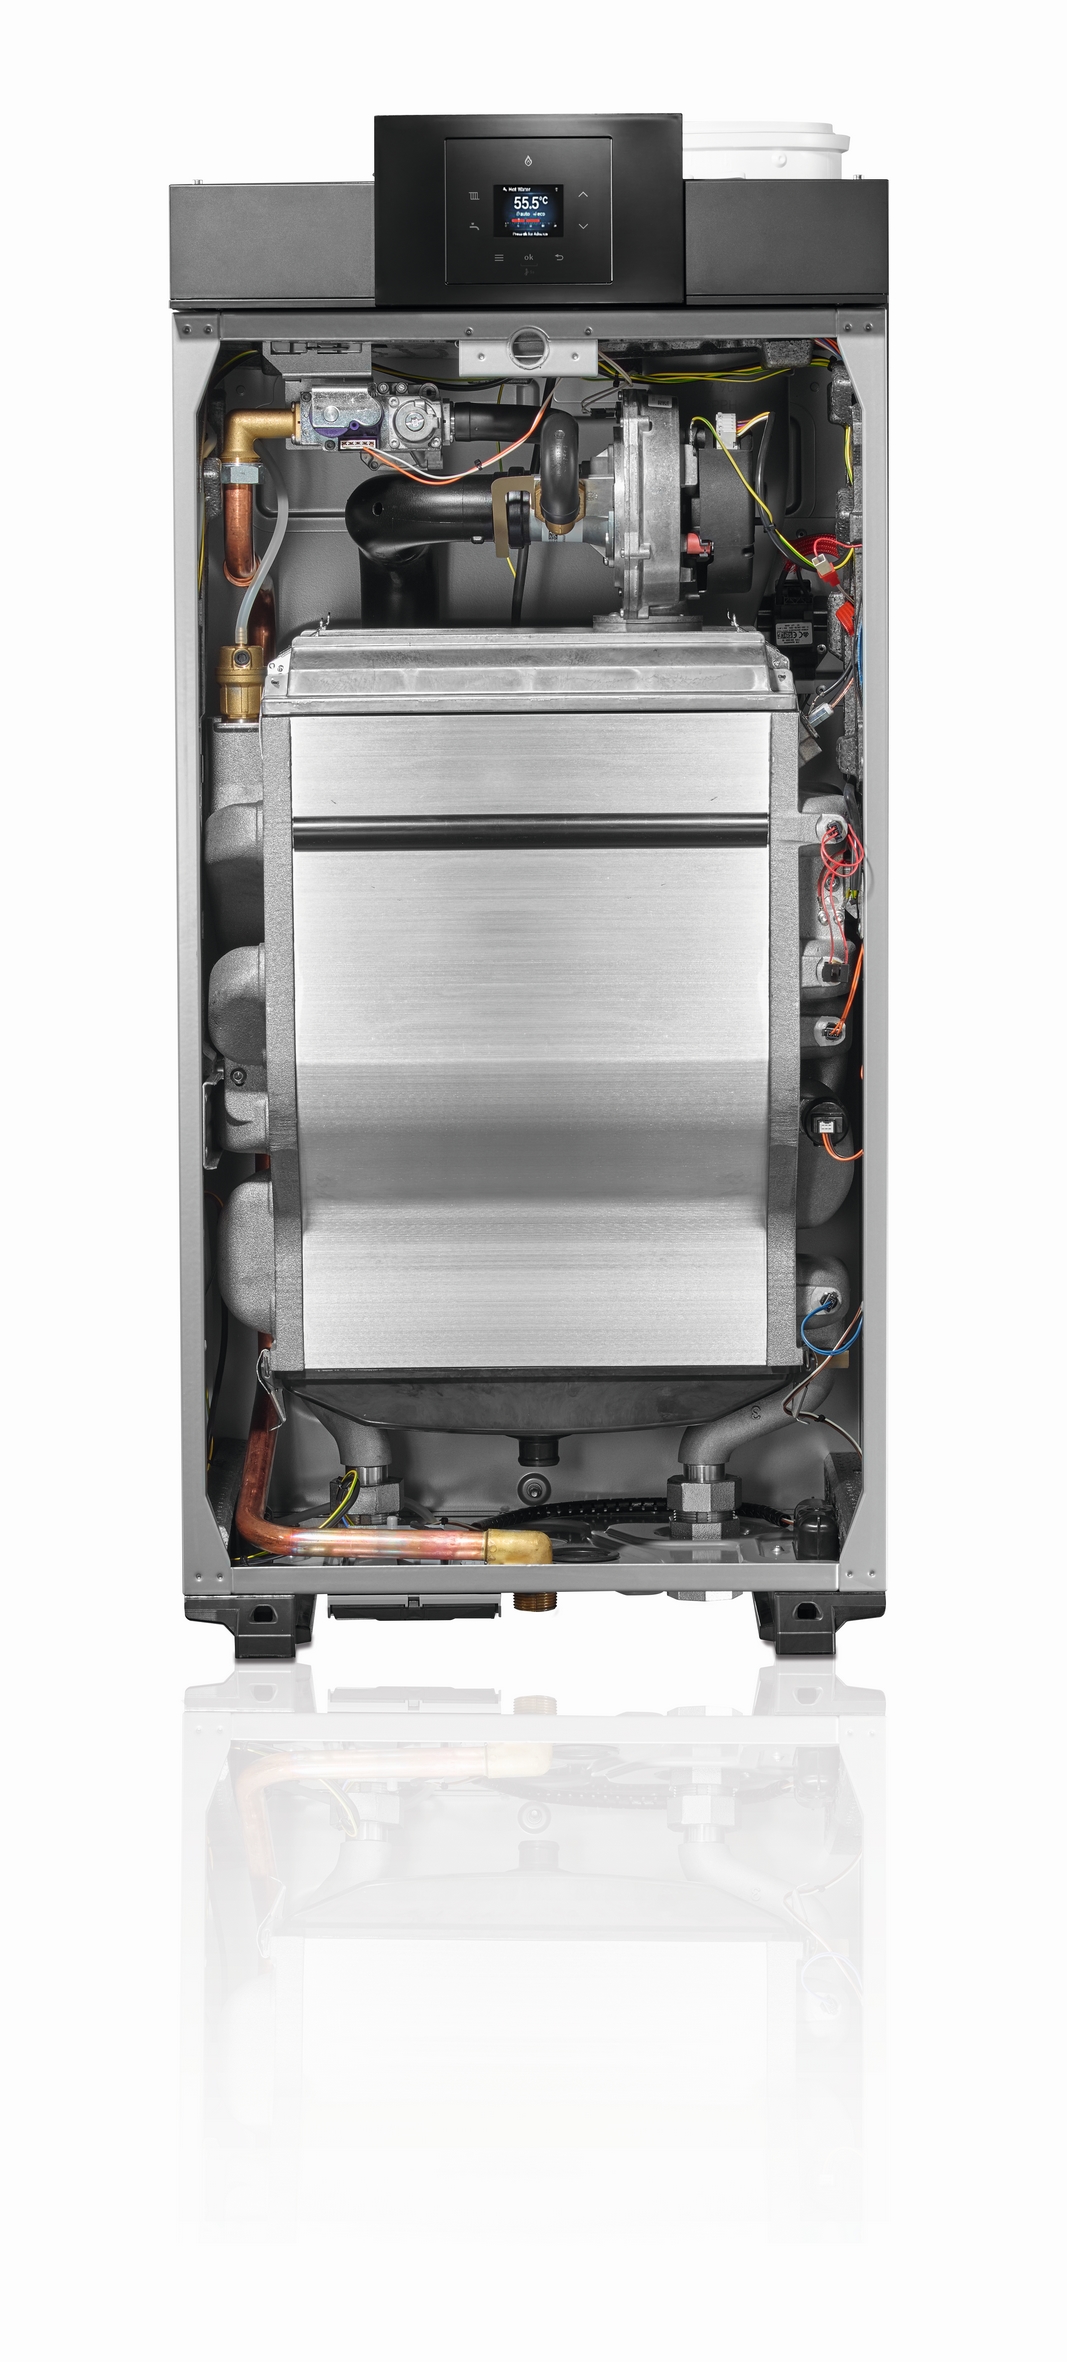 Jednoduše výkonný: Plynový kondenzační kotel Condens 7000 WP od značky Bosch je k dispozici ve výkonech 50, 70 kW, 100 kW a 150 kW.  (Zdroj: www.bosch-vytapeni.cz)